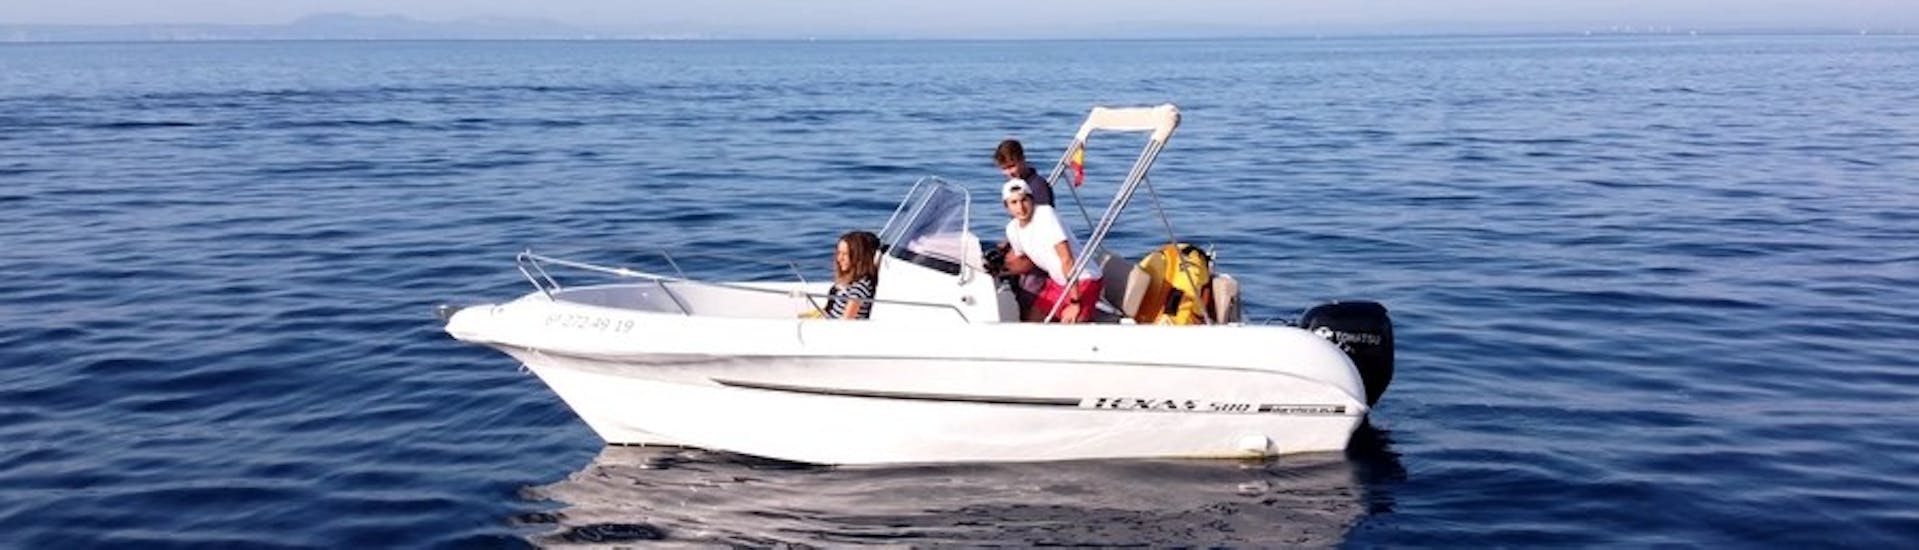 Le bateau à moteur moderne TEXAS 580 posé sur les eaux turquoises de la baie des roses avec un groupe d'amis à bord lors d'une location de bateau en Costa Brava pour jusqu'à 6 personnes avec permis avec Maxi Boats.